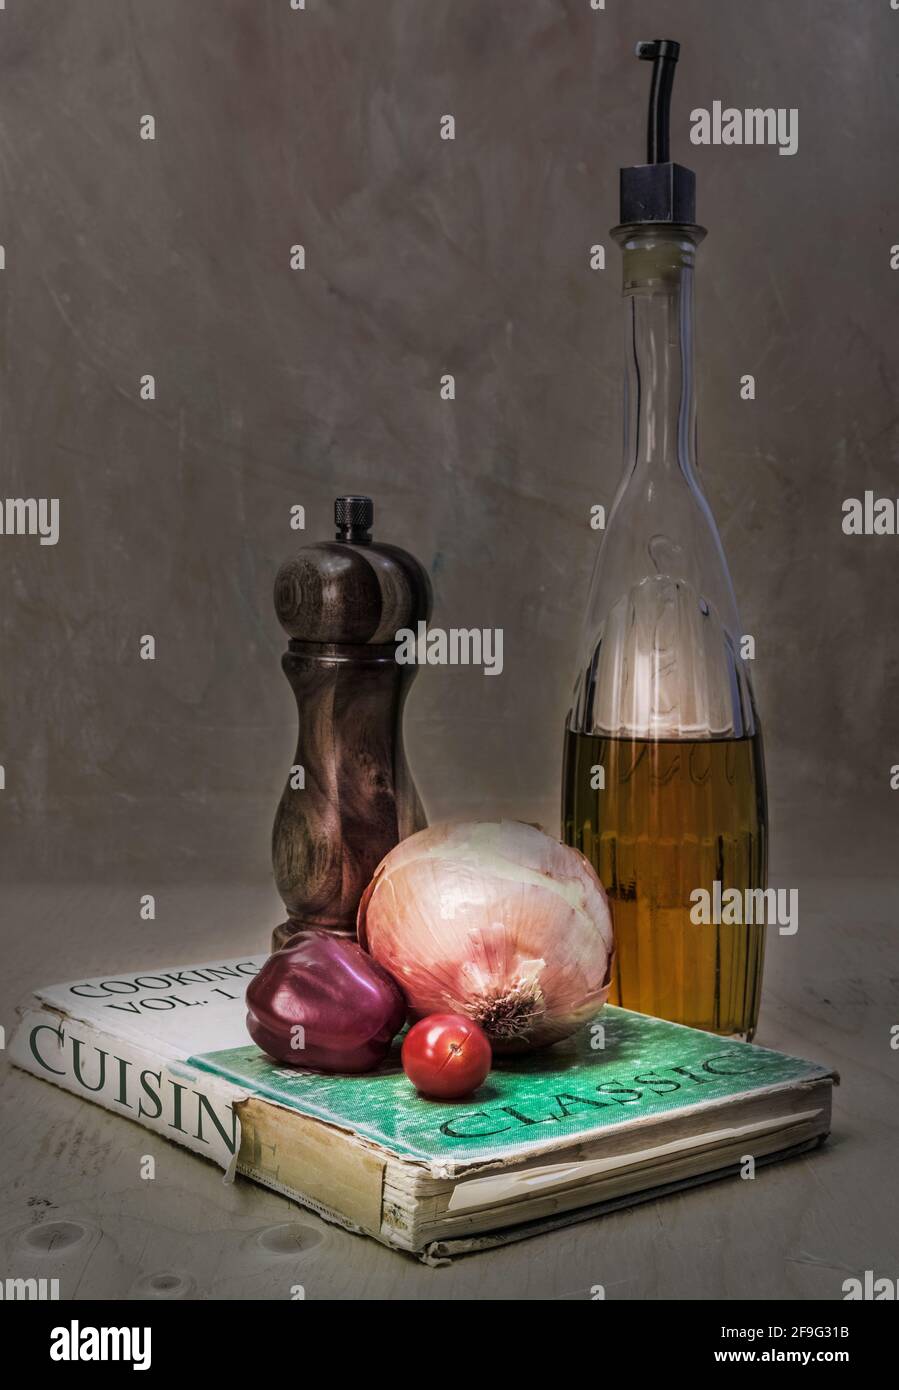 Sur le vieux livre de cuisine légèrement déchiré et surutilisé, nous avons un moulin à poivre, un oignon et une tomate de raisin. À côté, la bouteille d'huile d'olive. Banque D'Images